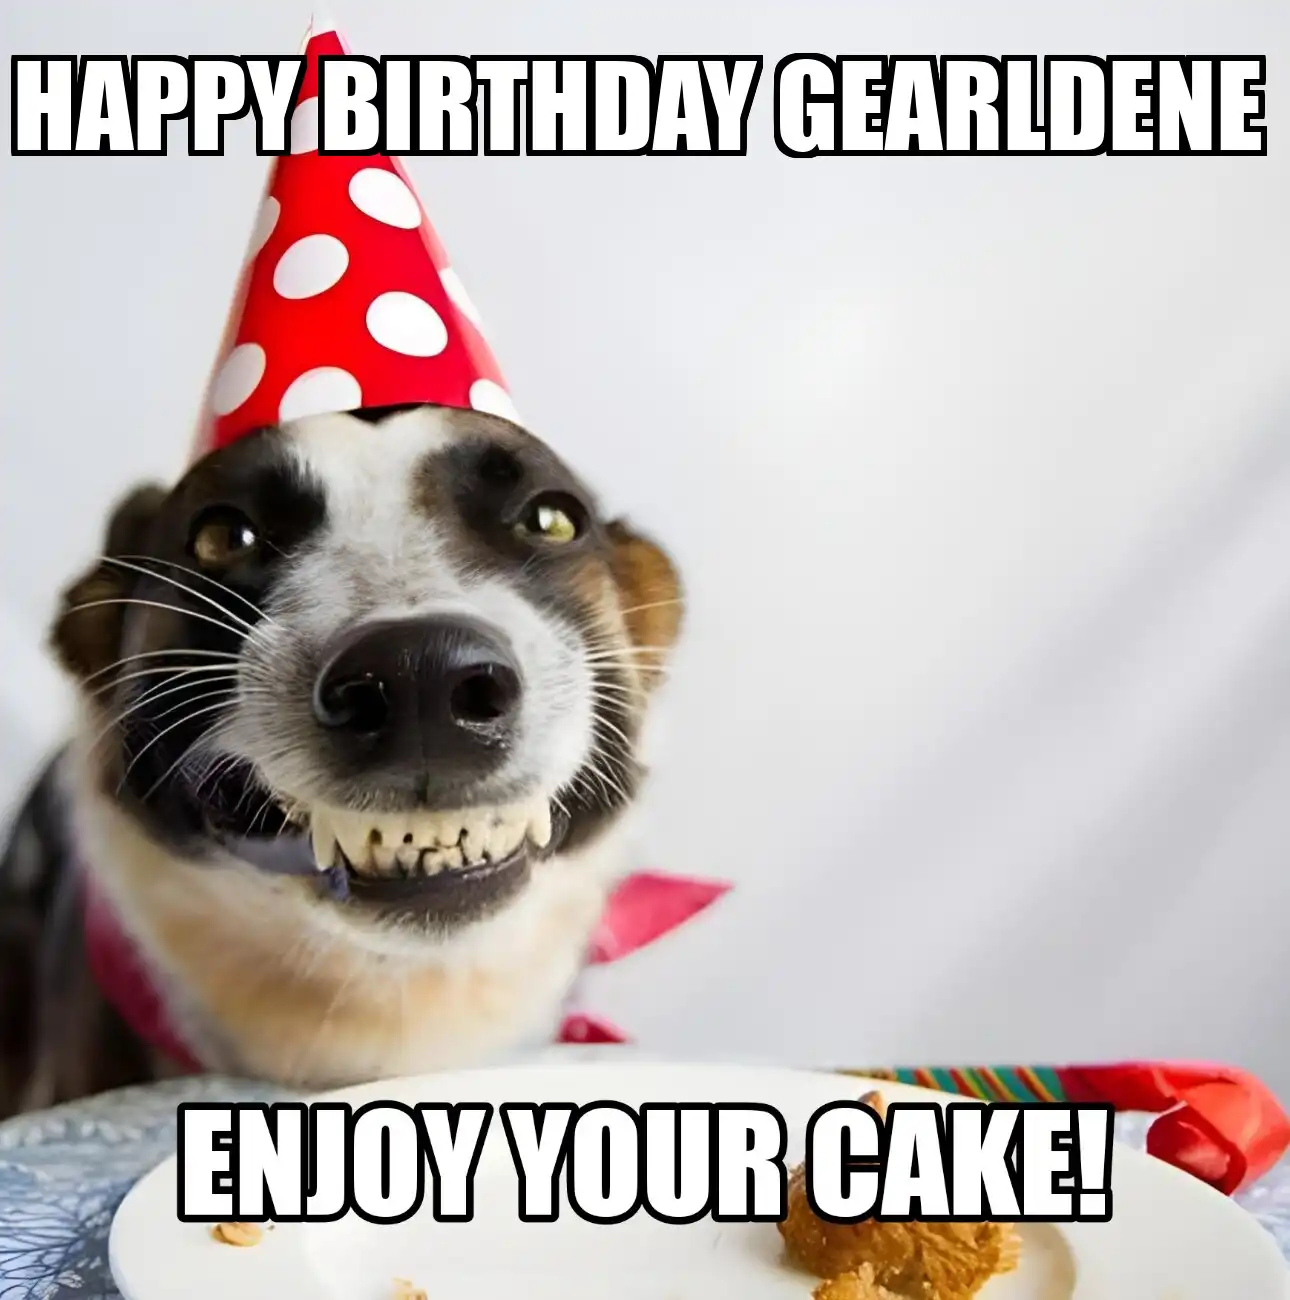 Happy Birthday Gearldene Enjoy Your Cake Dog Meme